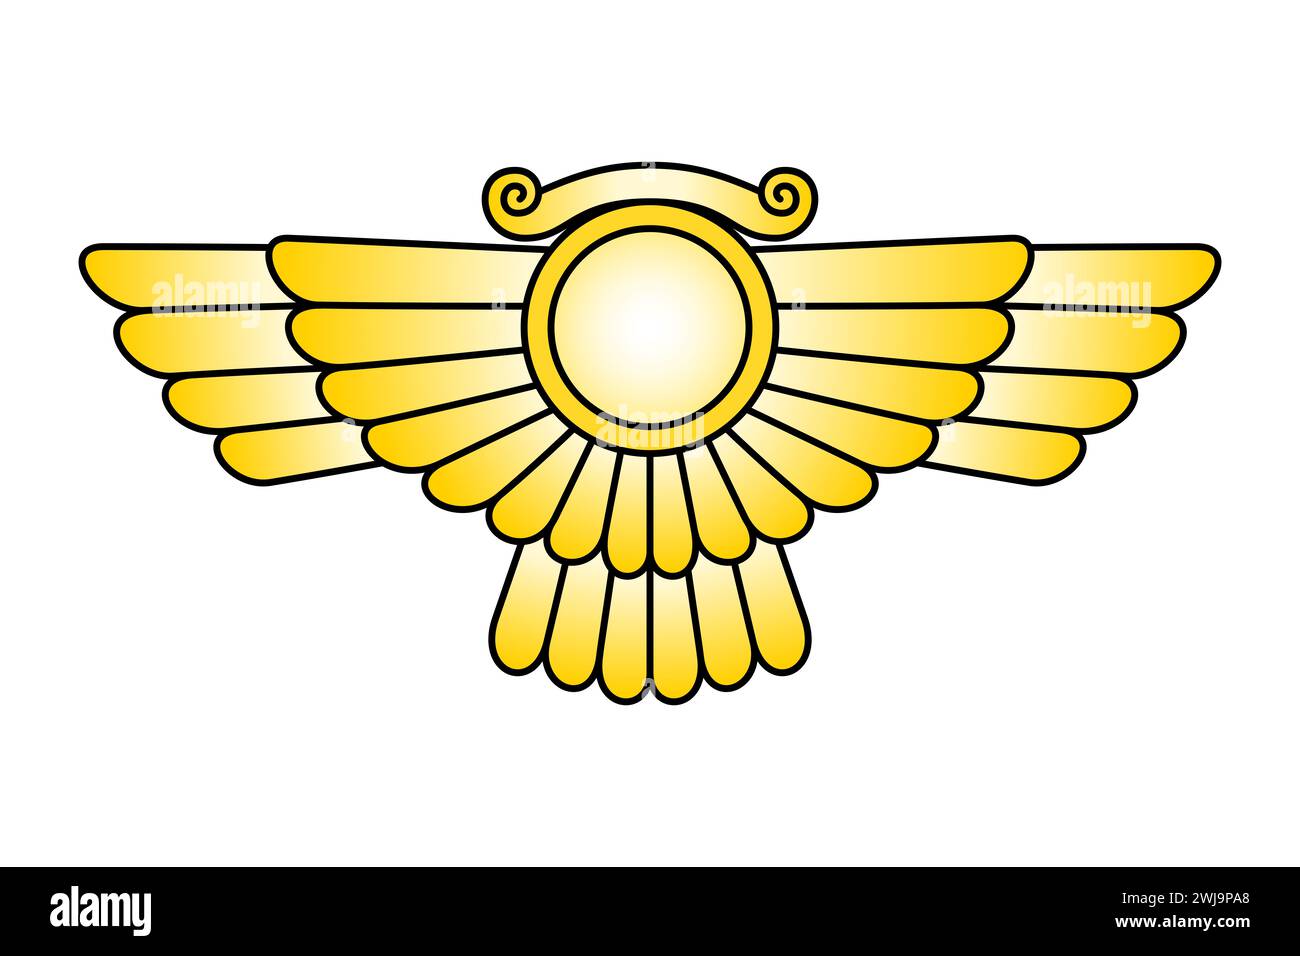 Emblème du soleil ailé du Dieu Ashur, disque solaire avec des ailes. Ashshur, le Dieu principal de la mythologie assyrienne dans la religion mésopotamienne, Dieu de la ville d'Assur. Banque D'Images